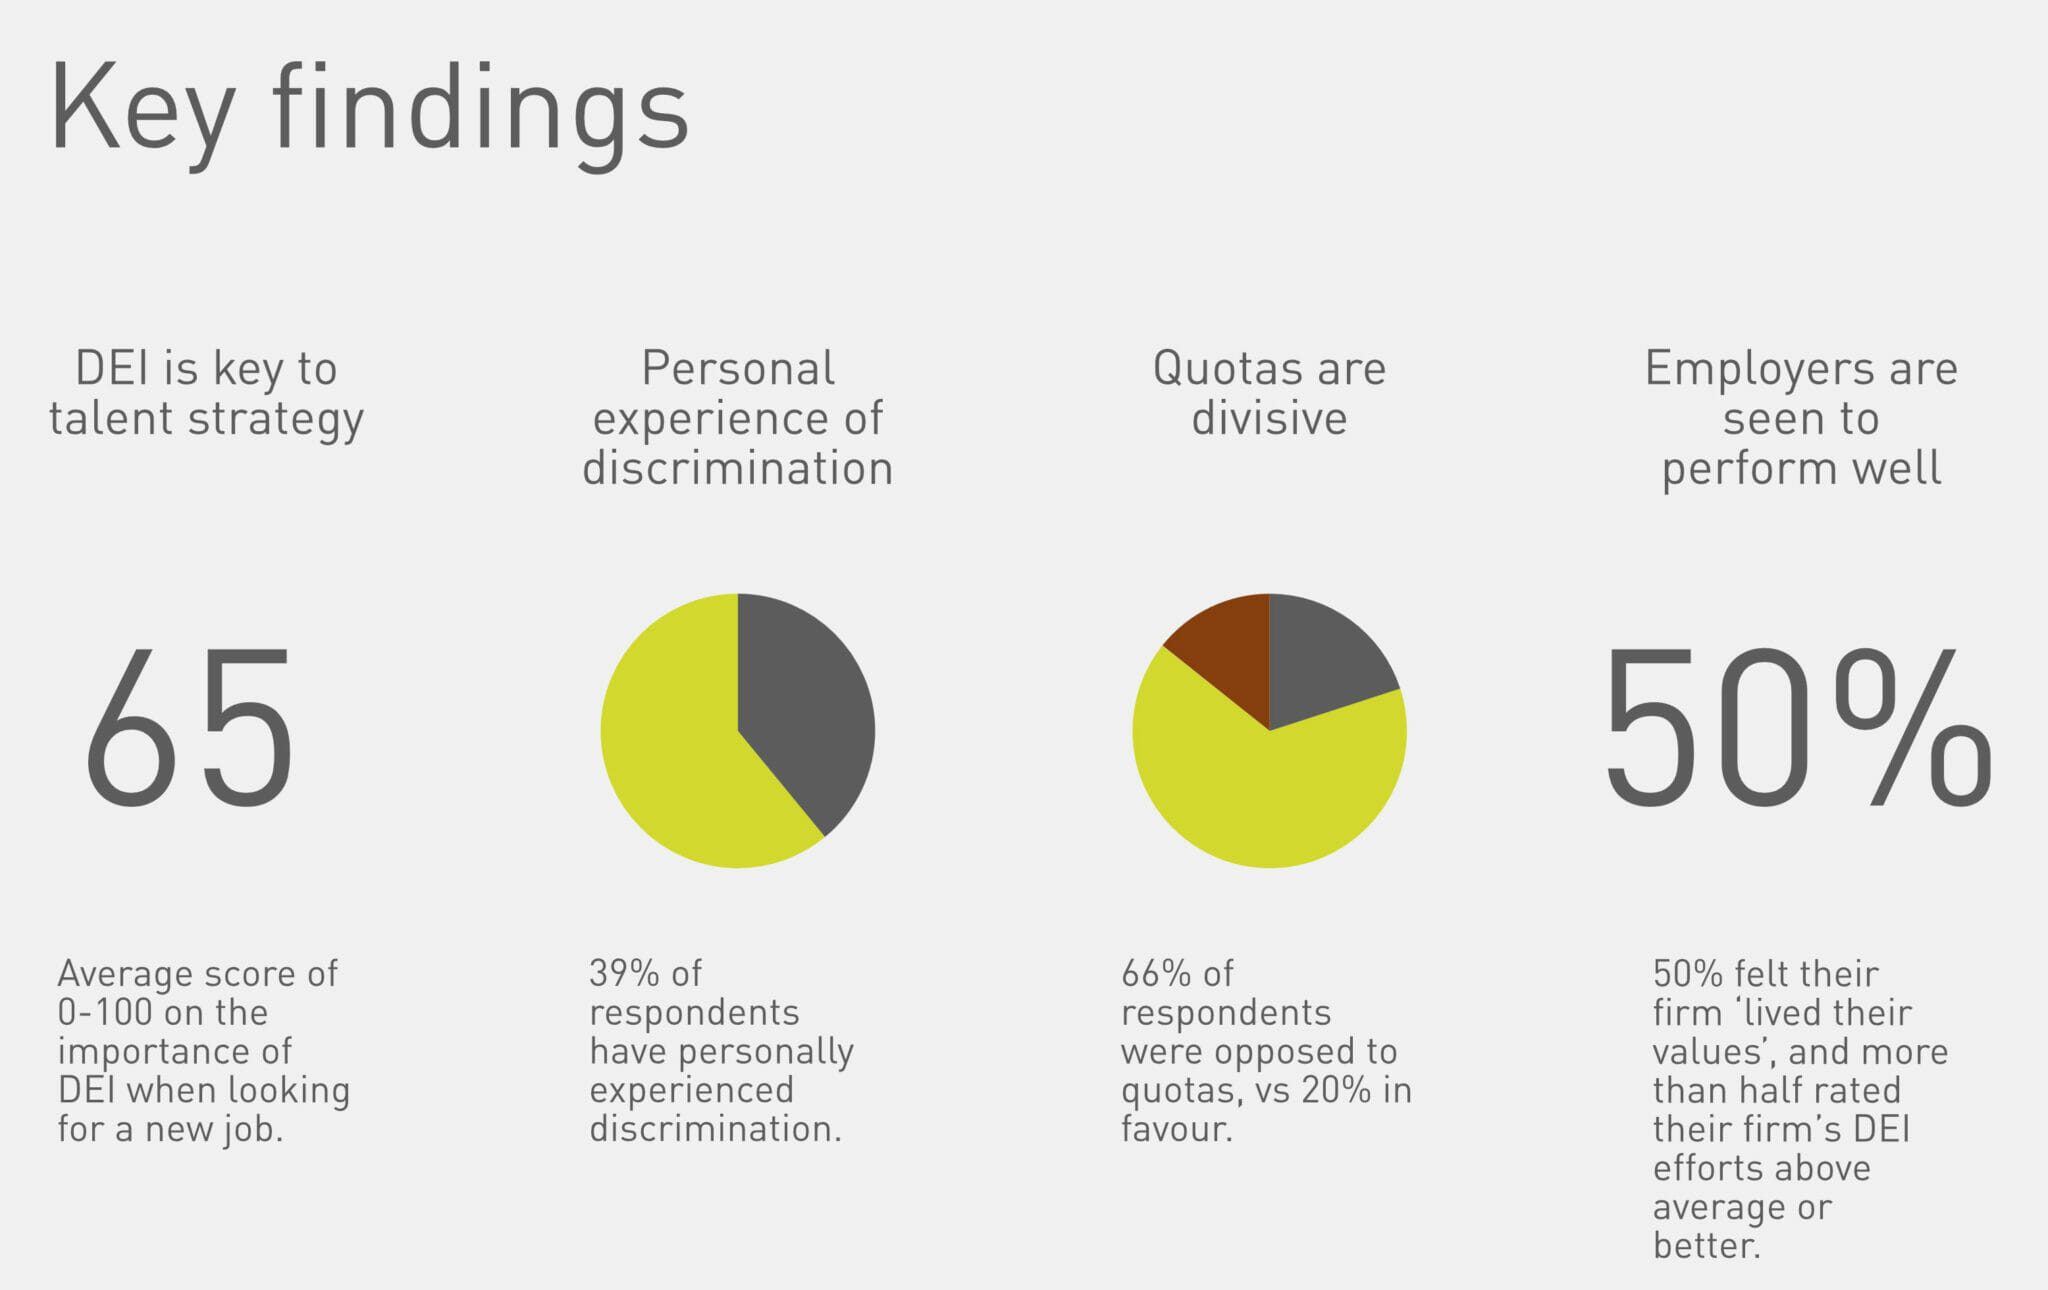 Diversity & Financial Services - survey